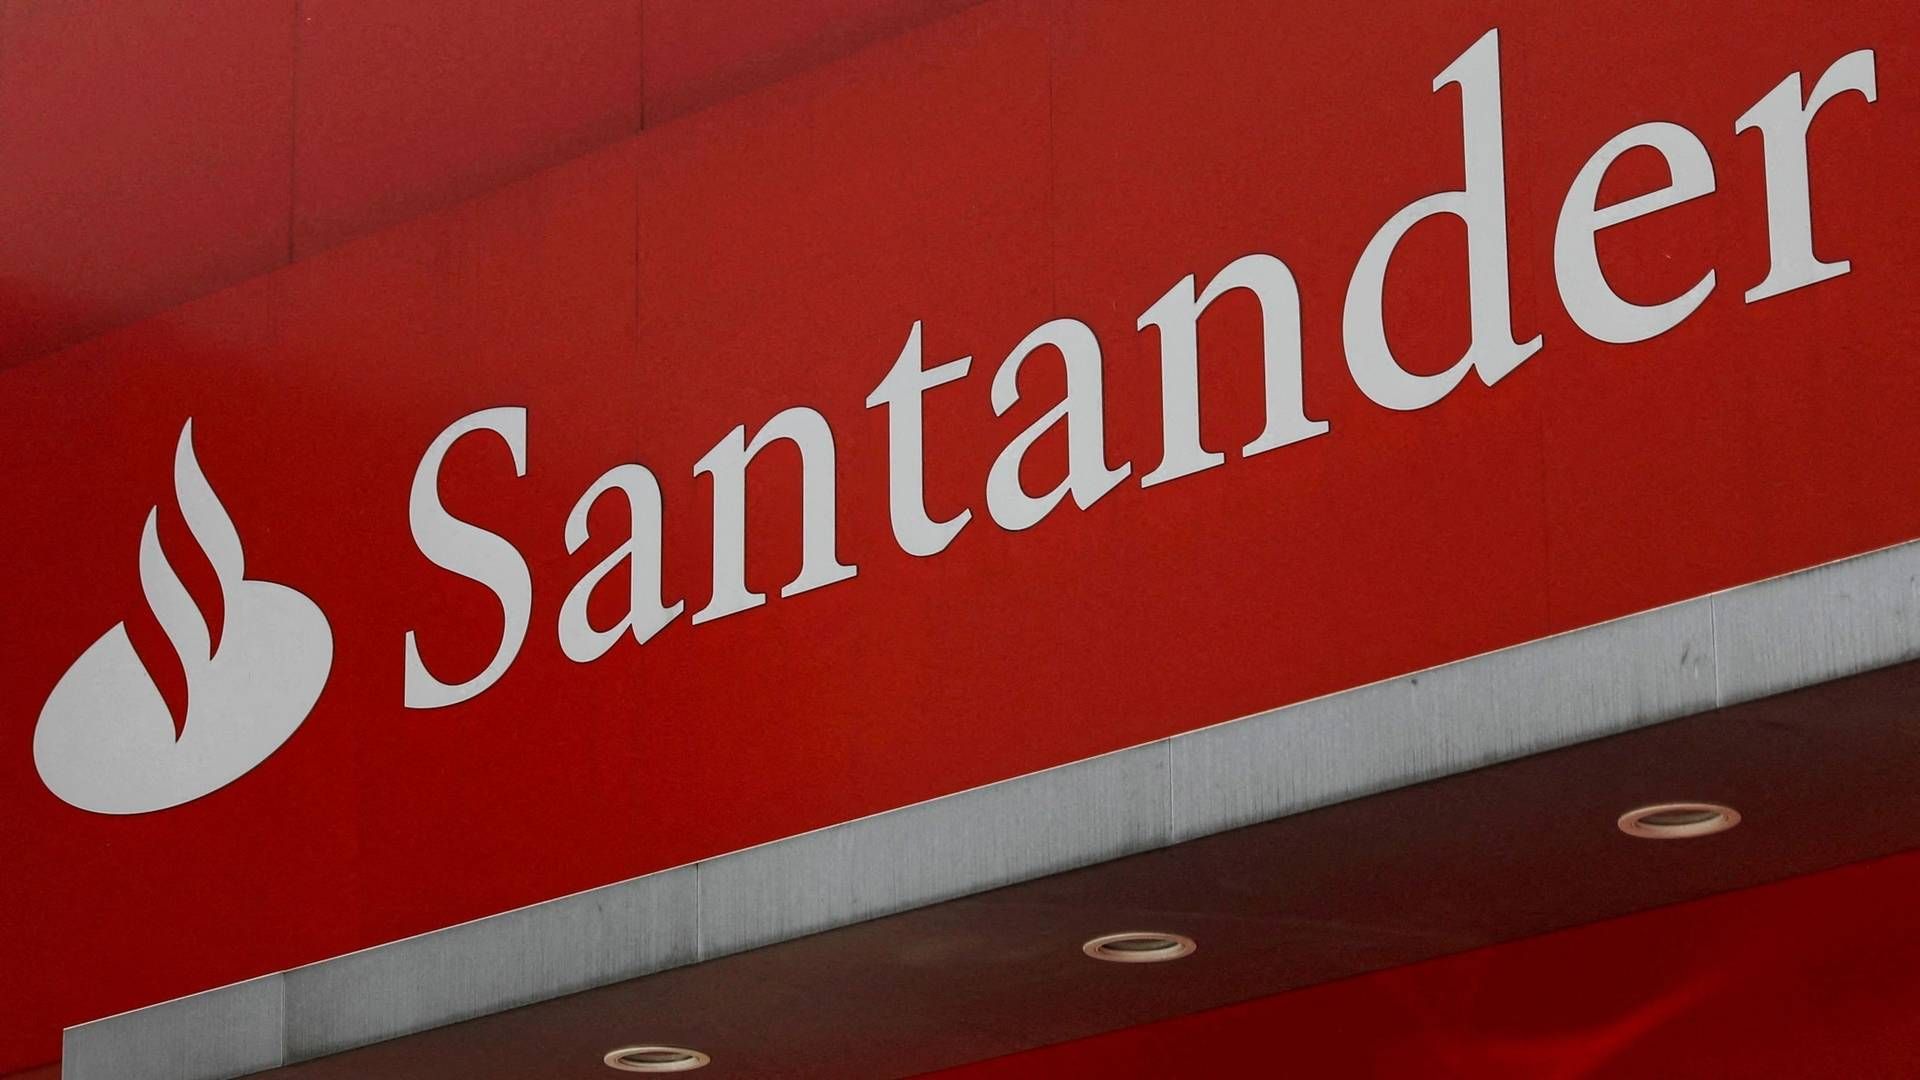 Santander måtte gi kunden fastrente, til tross for at det kom tydelig frem av markedsføringen at renta var flytende. | Foto: EDGARD GARRIDO/REUTERS / X01998